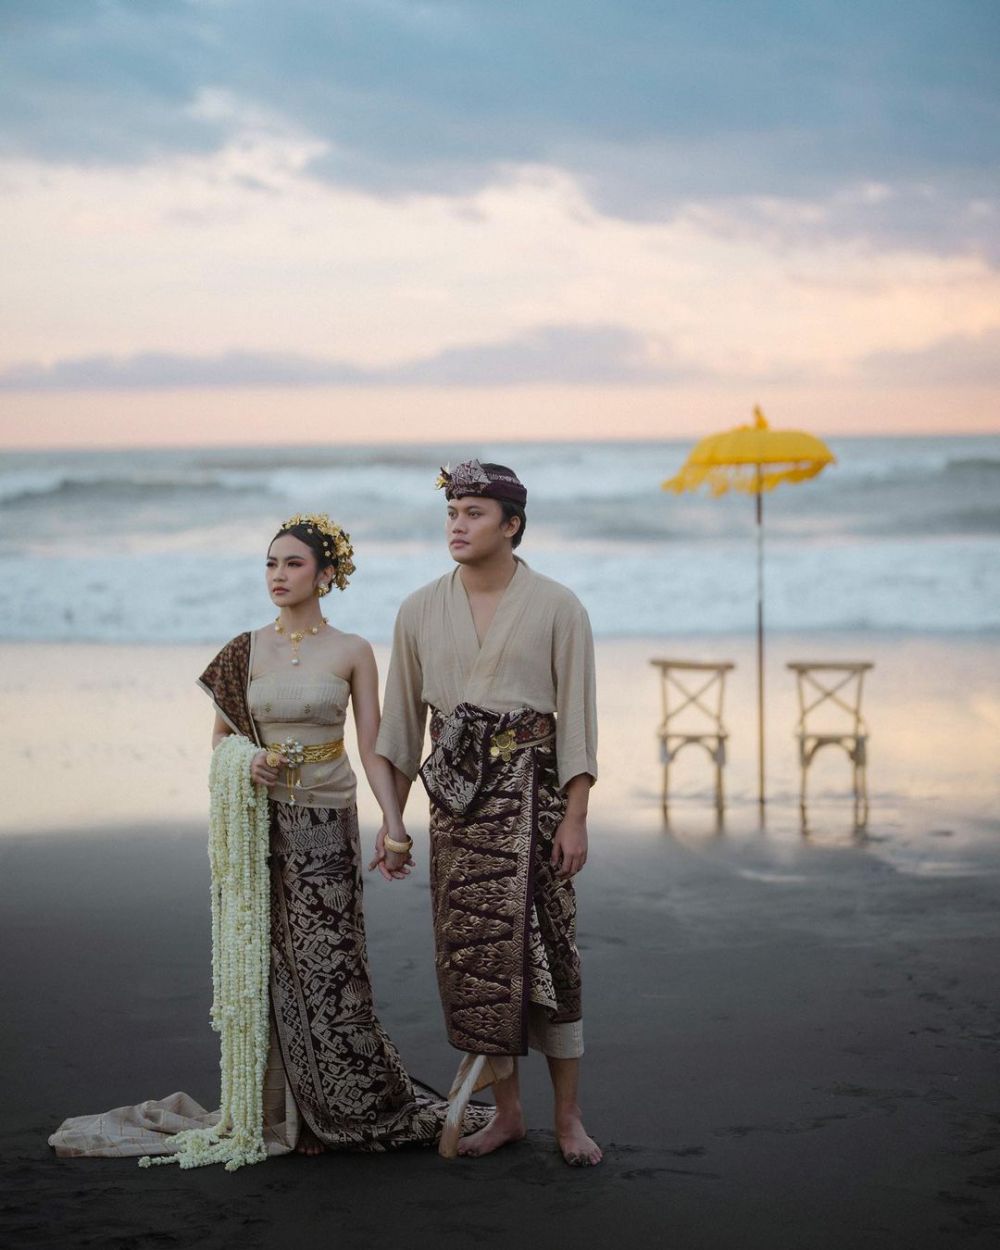 8 Foto Prewedding Mahalini dan Rizky Febian di Tepi Pantai, Syahdu!